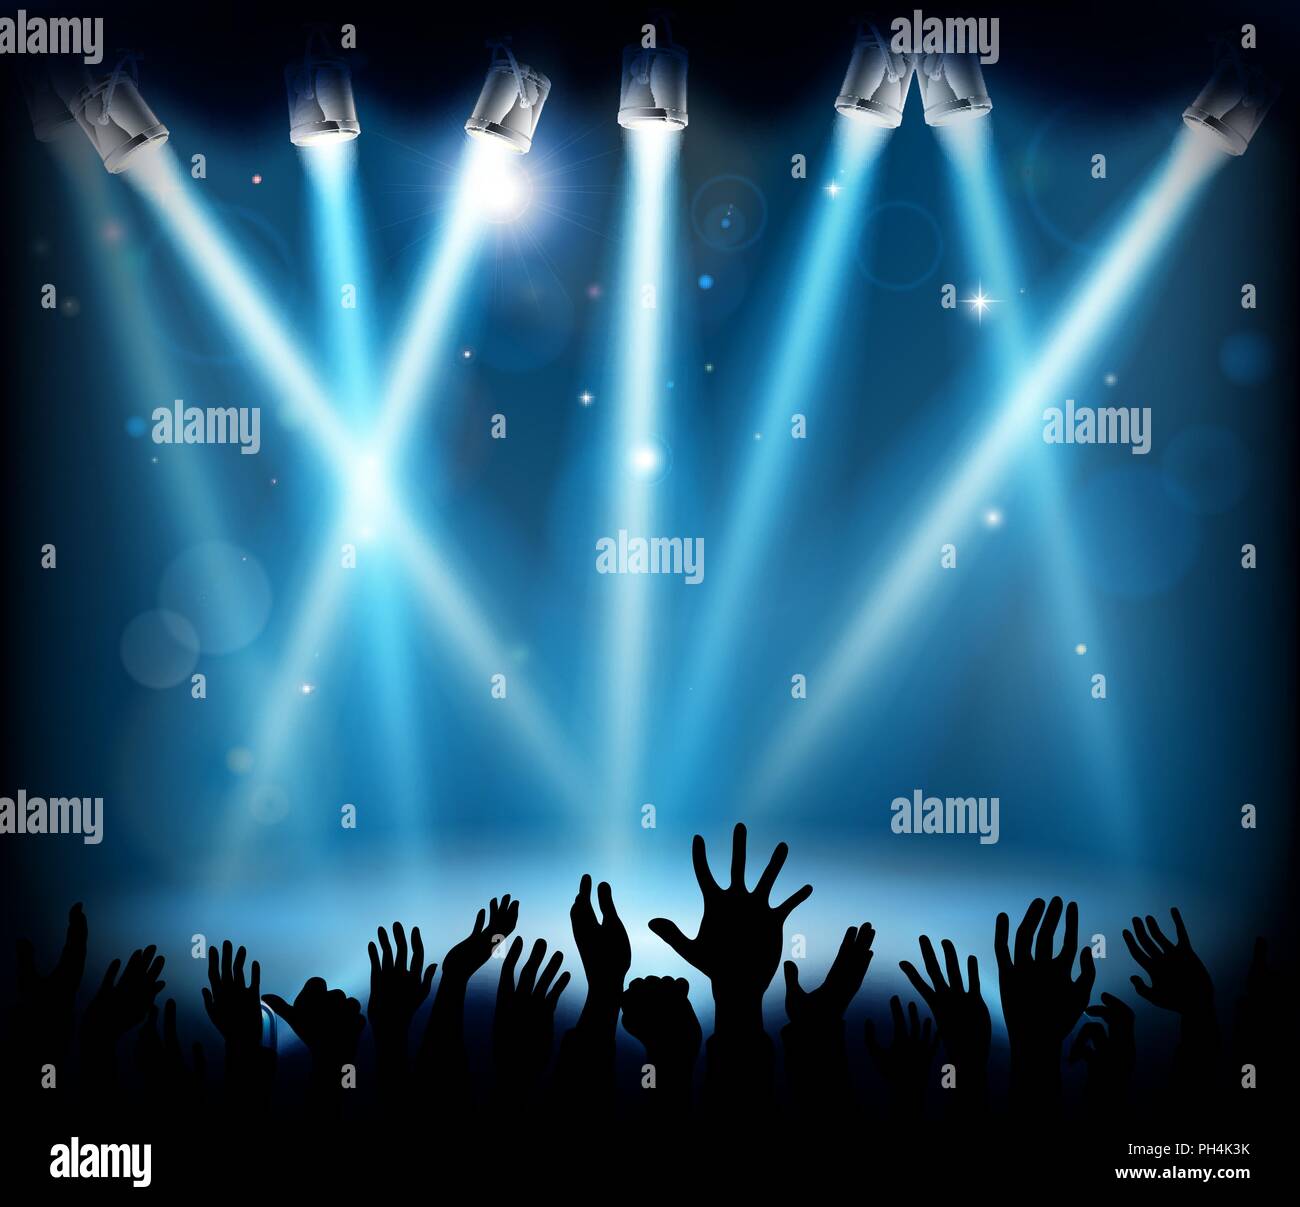 Konzert Bühne Party Menge Menschen die Hände Silhouette Stock Vektor